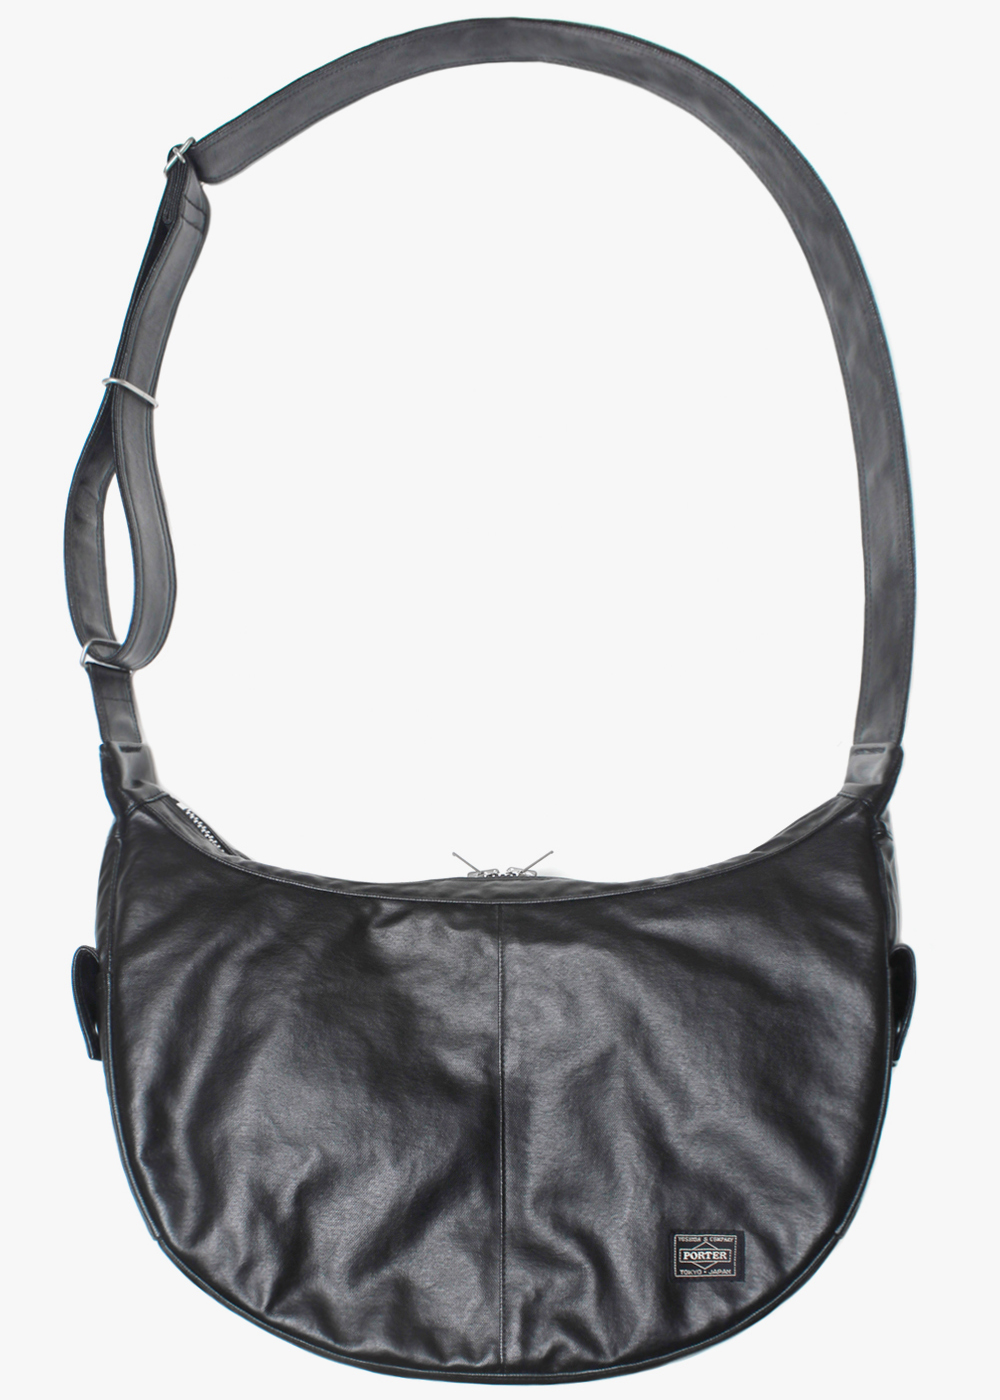 PORTERfree style shoulder bag